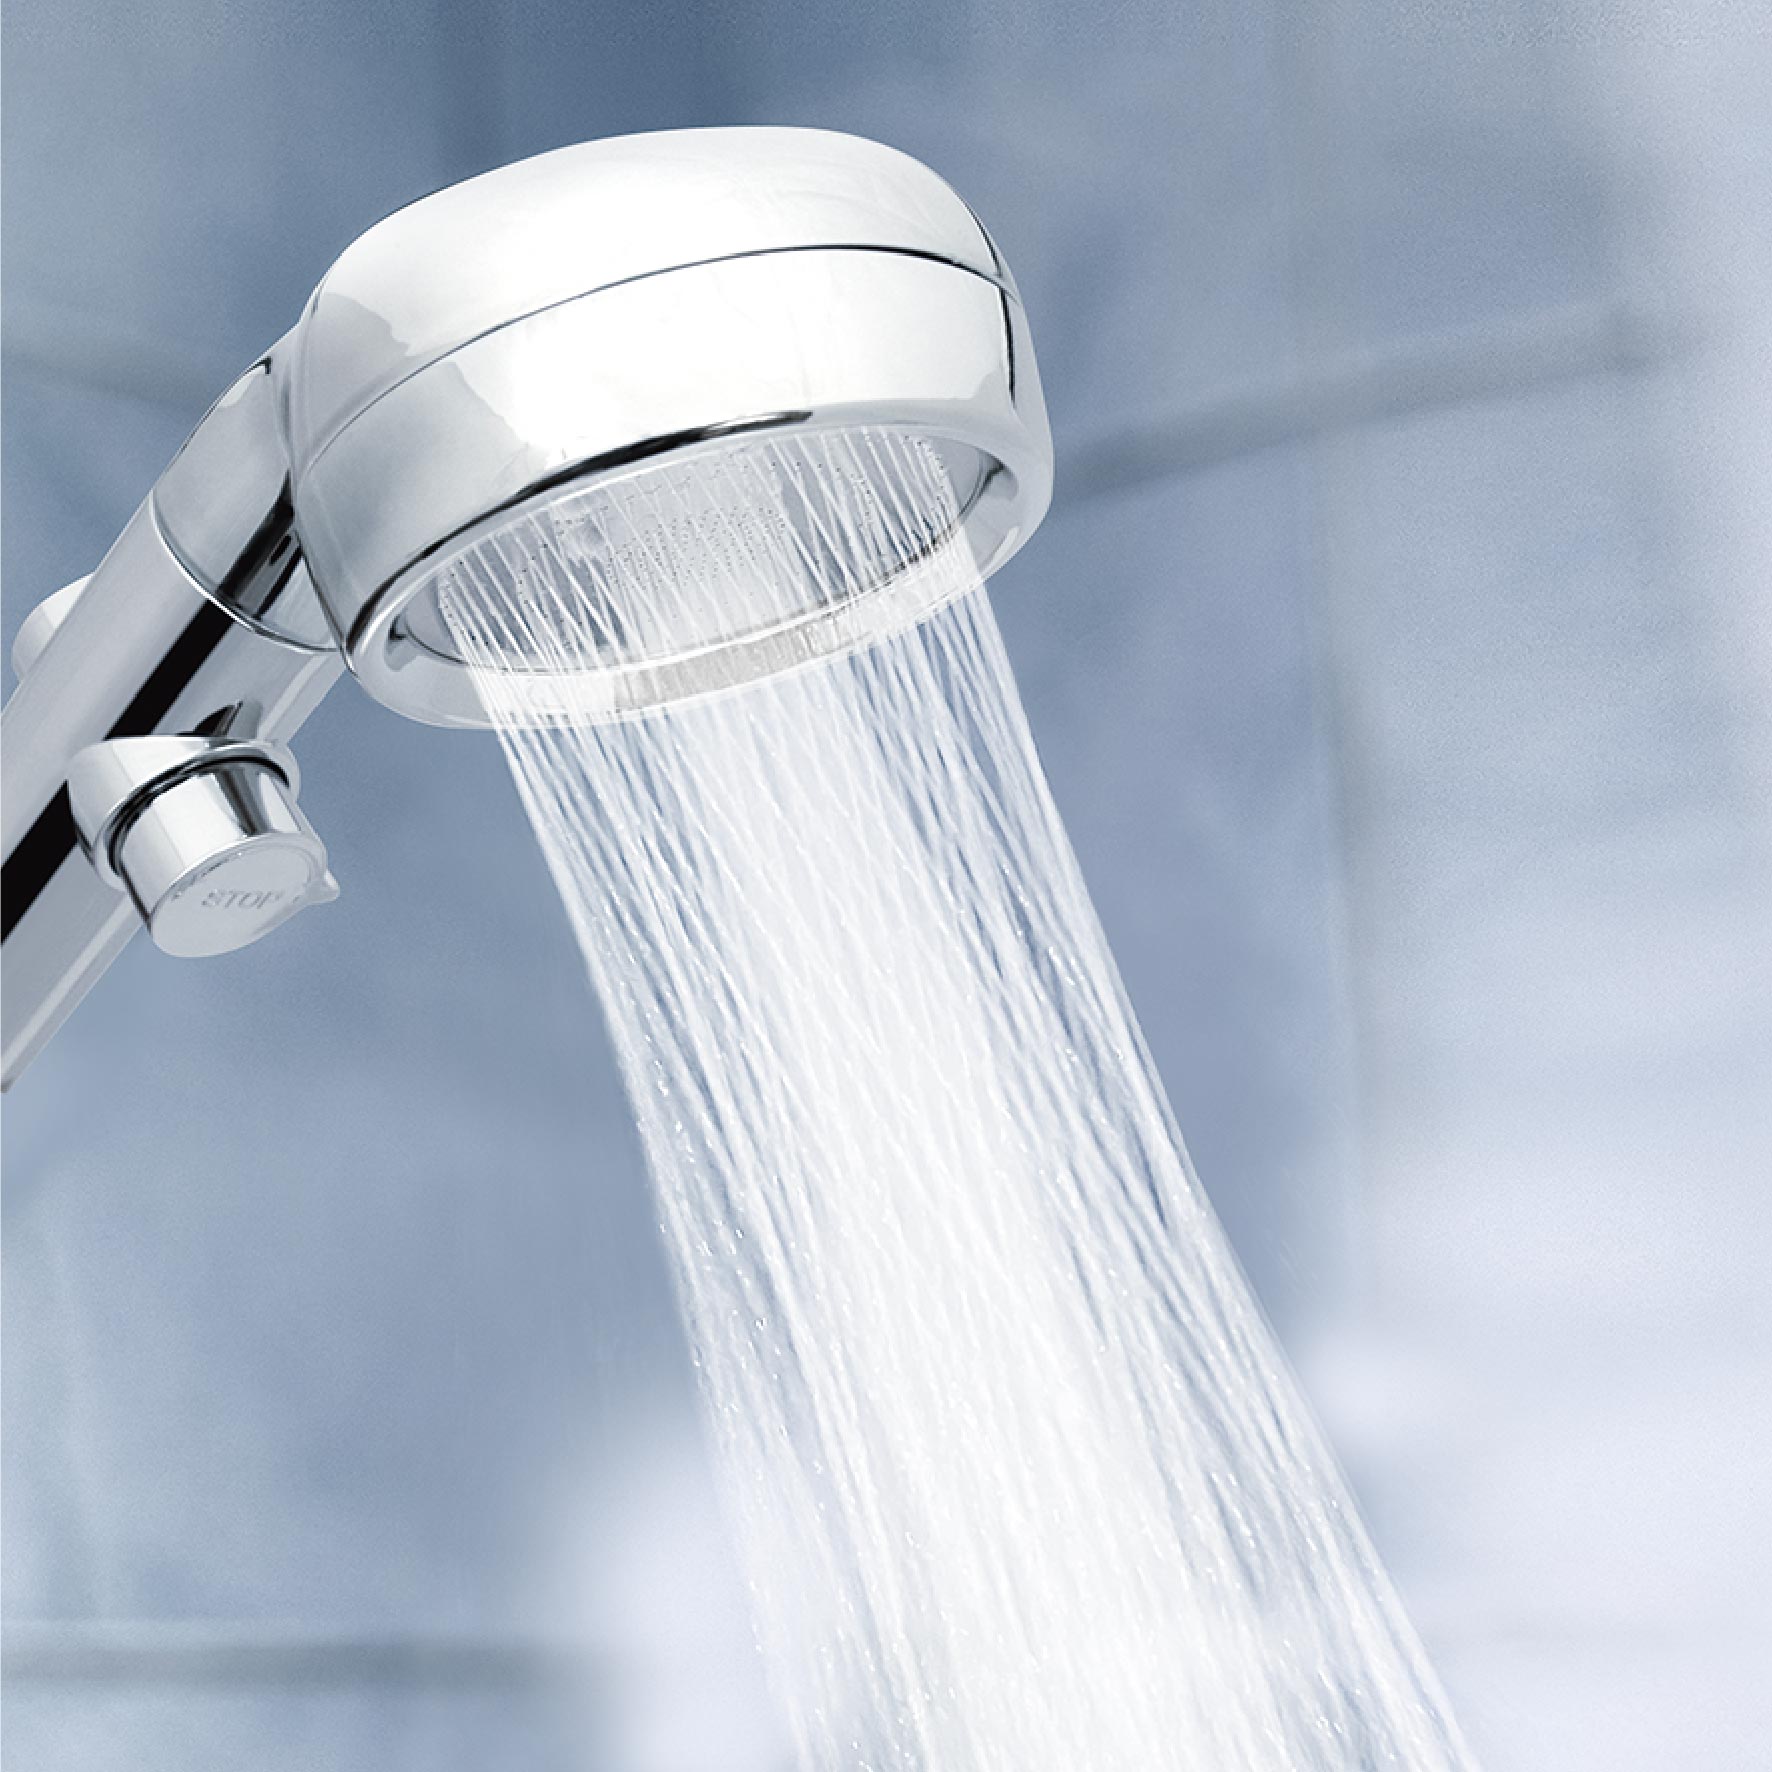 節水シャワーヘッド 美セーブ – 株式会社アクセル